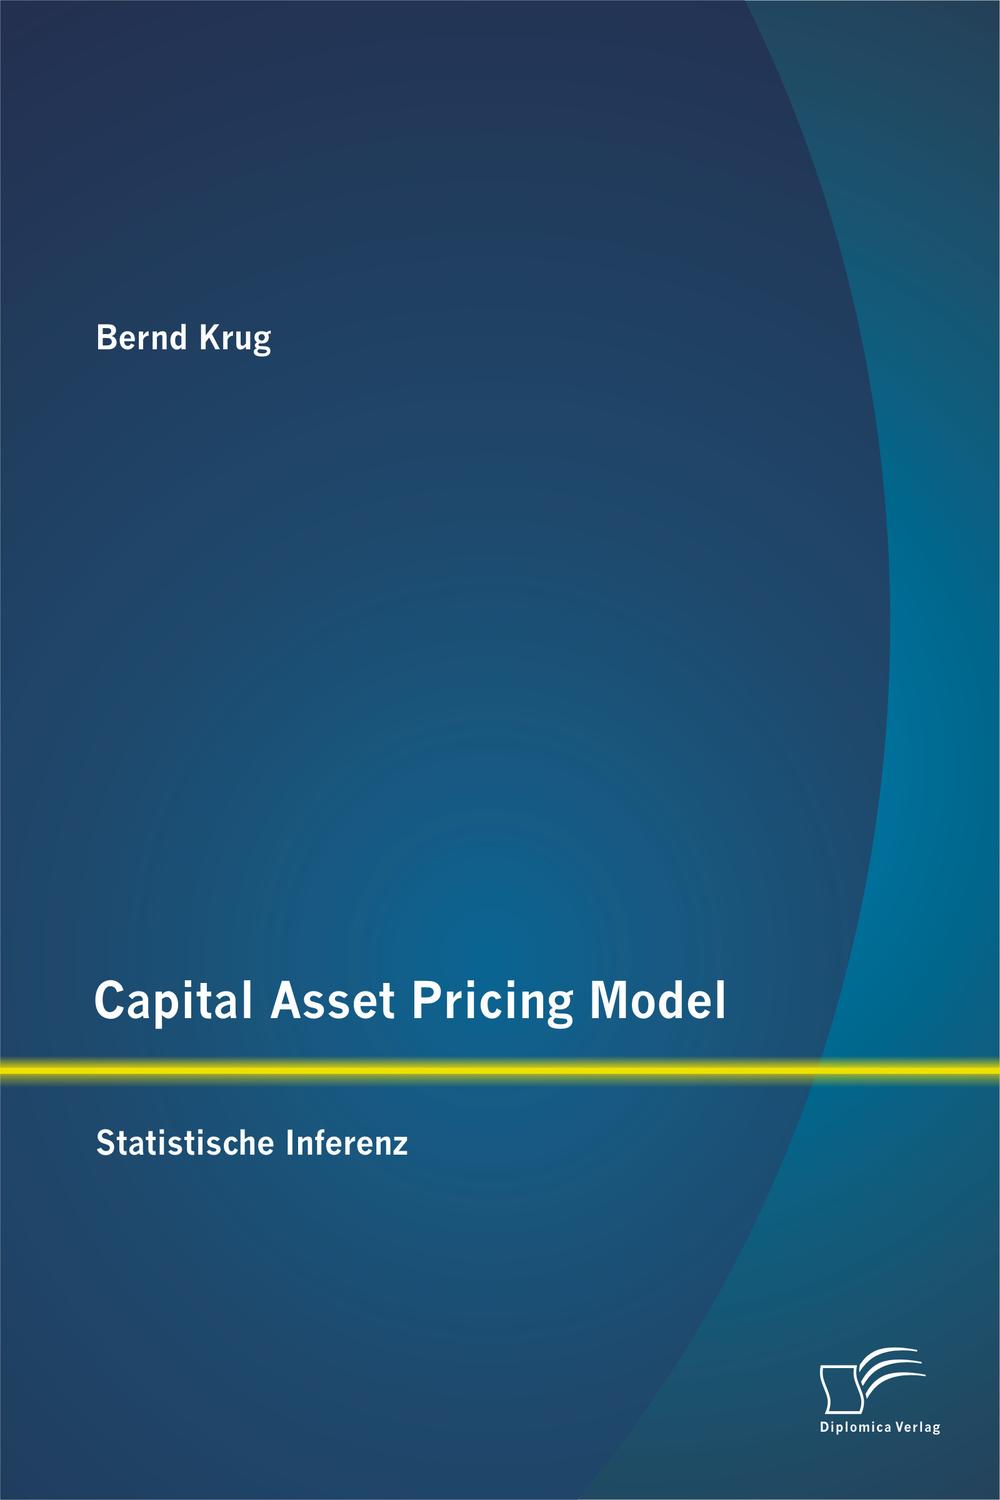 Capital Asset Pricing Model: Statistische Inferenz - Bernd Krug